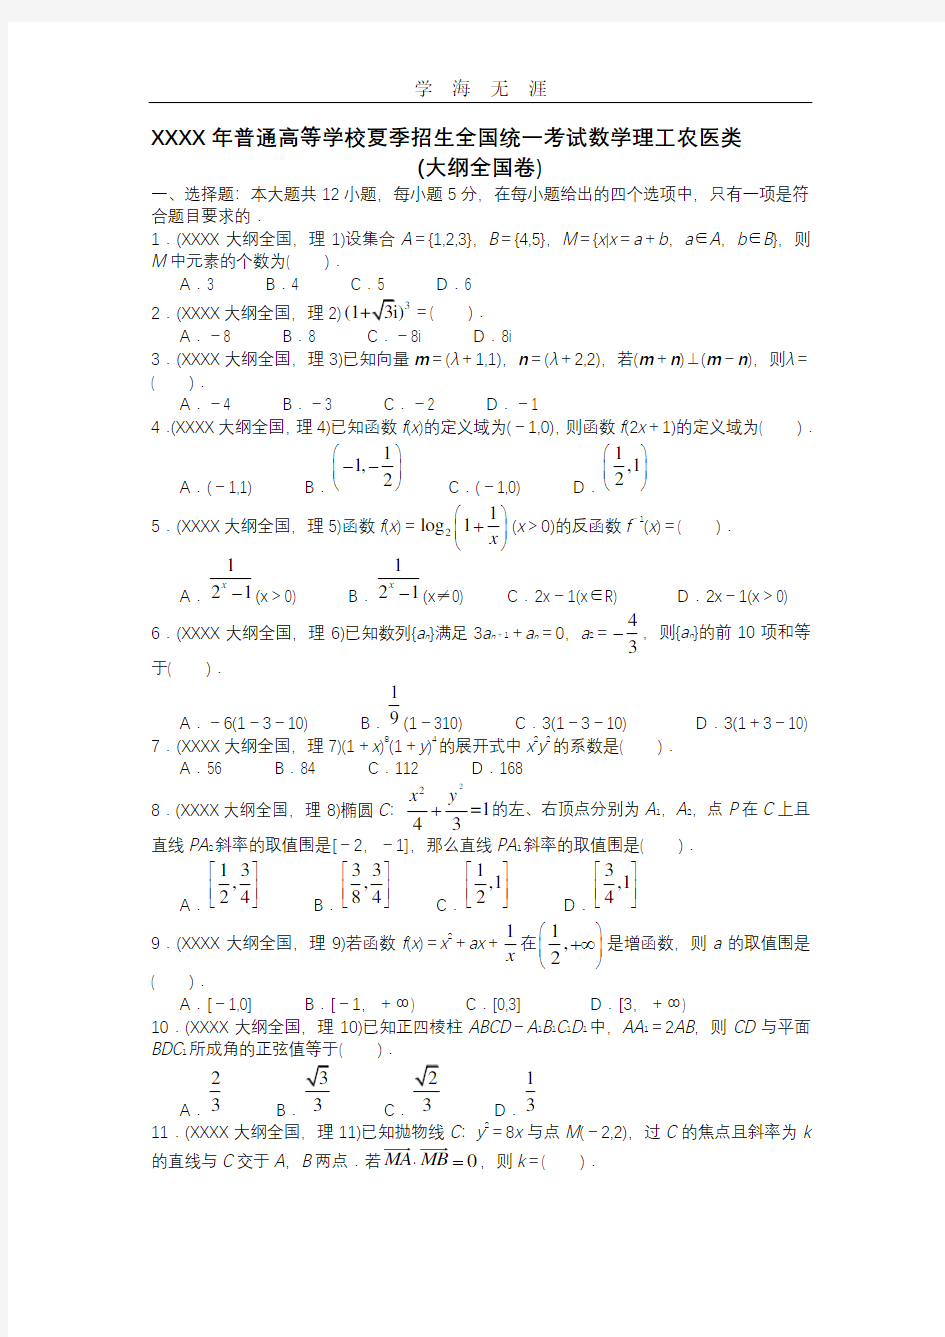 历年高考数学真题(全国卷).pdf